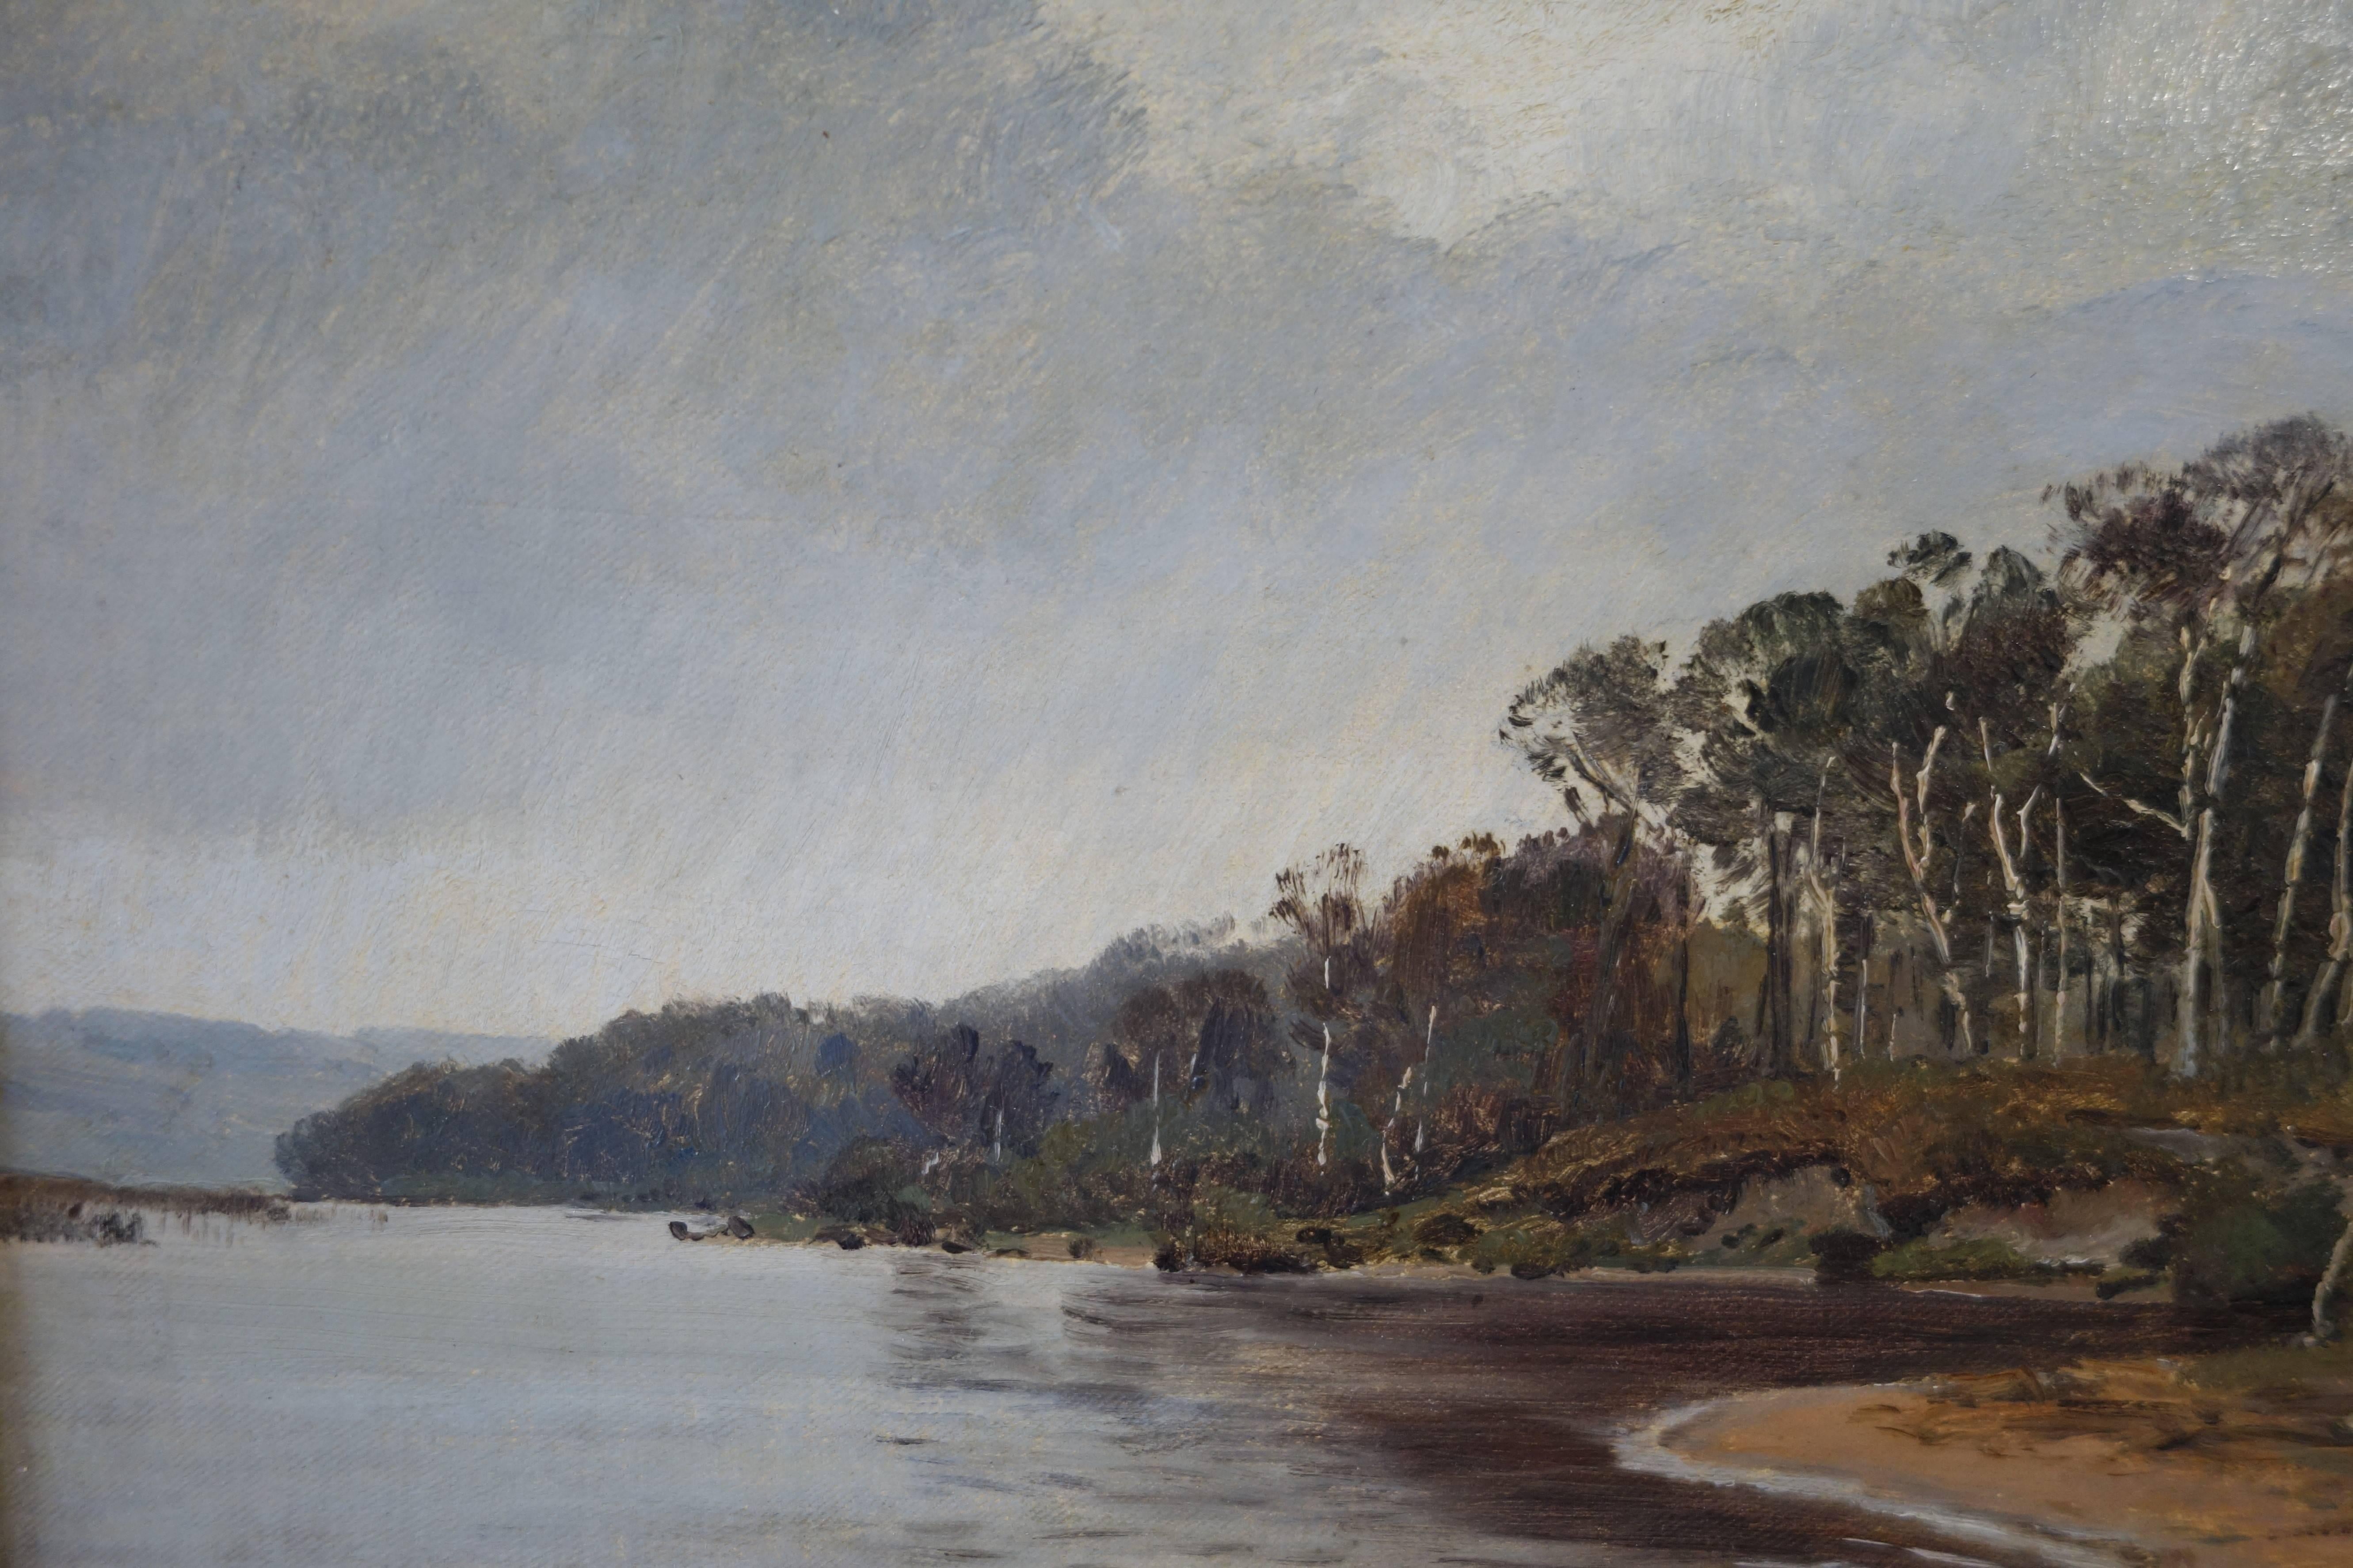 Other Janus La Cour, Coastal Landscape in October by Ringholm, 1873